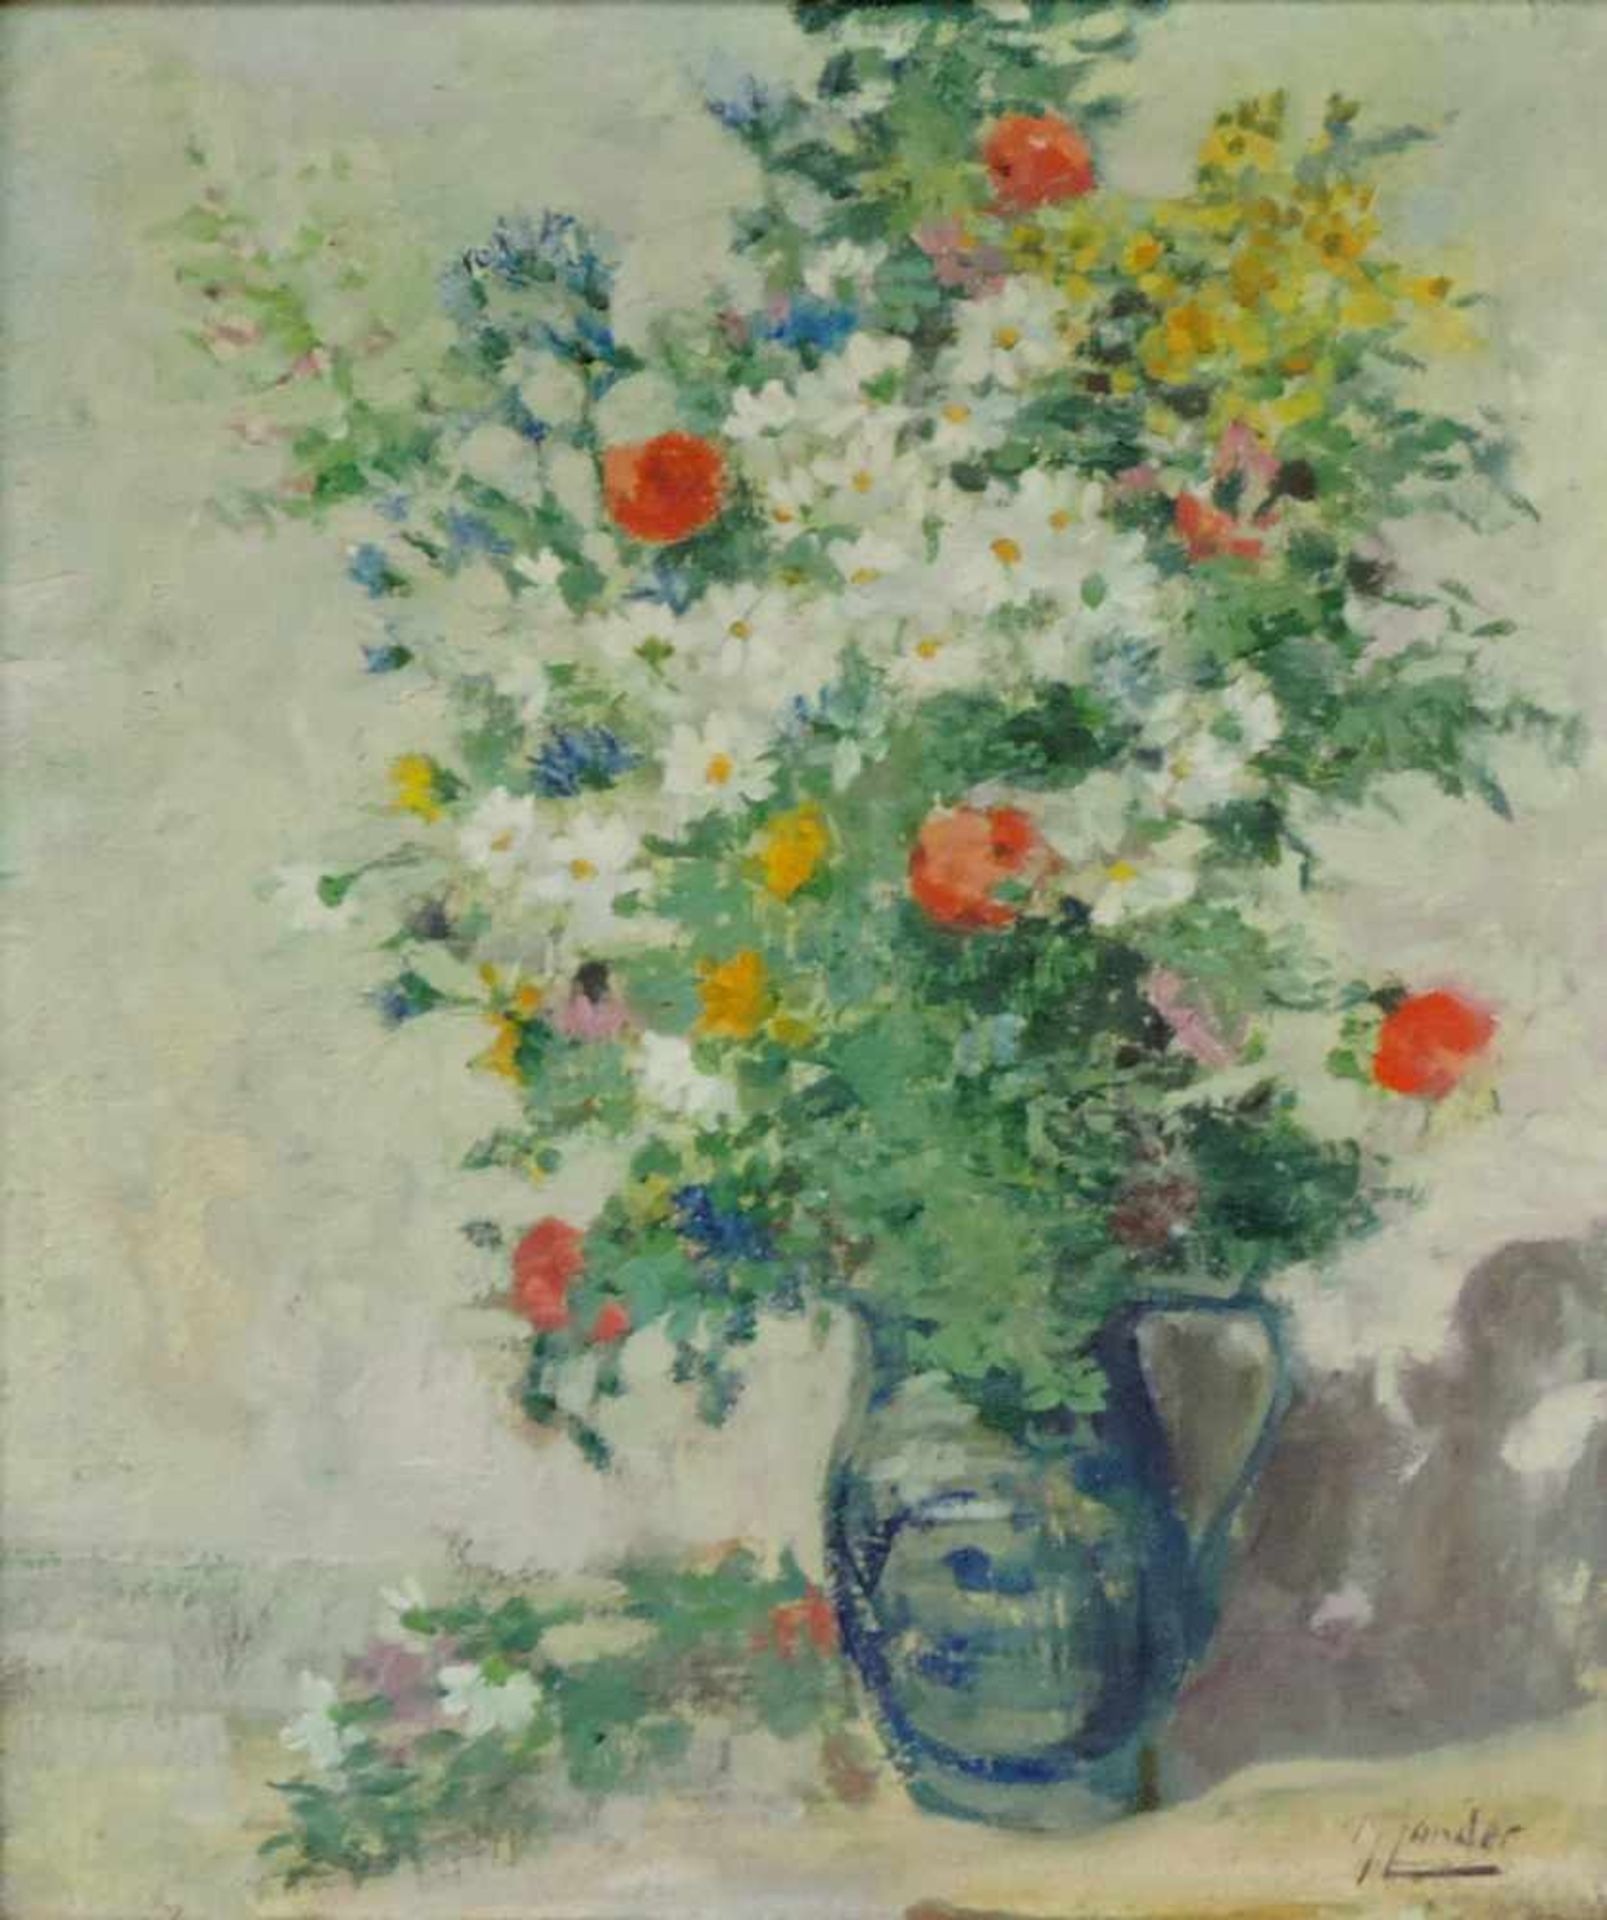 Max ZANDER (1907 - 1985). Blumen in einer Vase. 71 cm x 60 cm. Gemälde, Öl auf Leinwand. Rechts